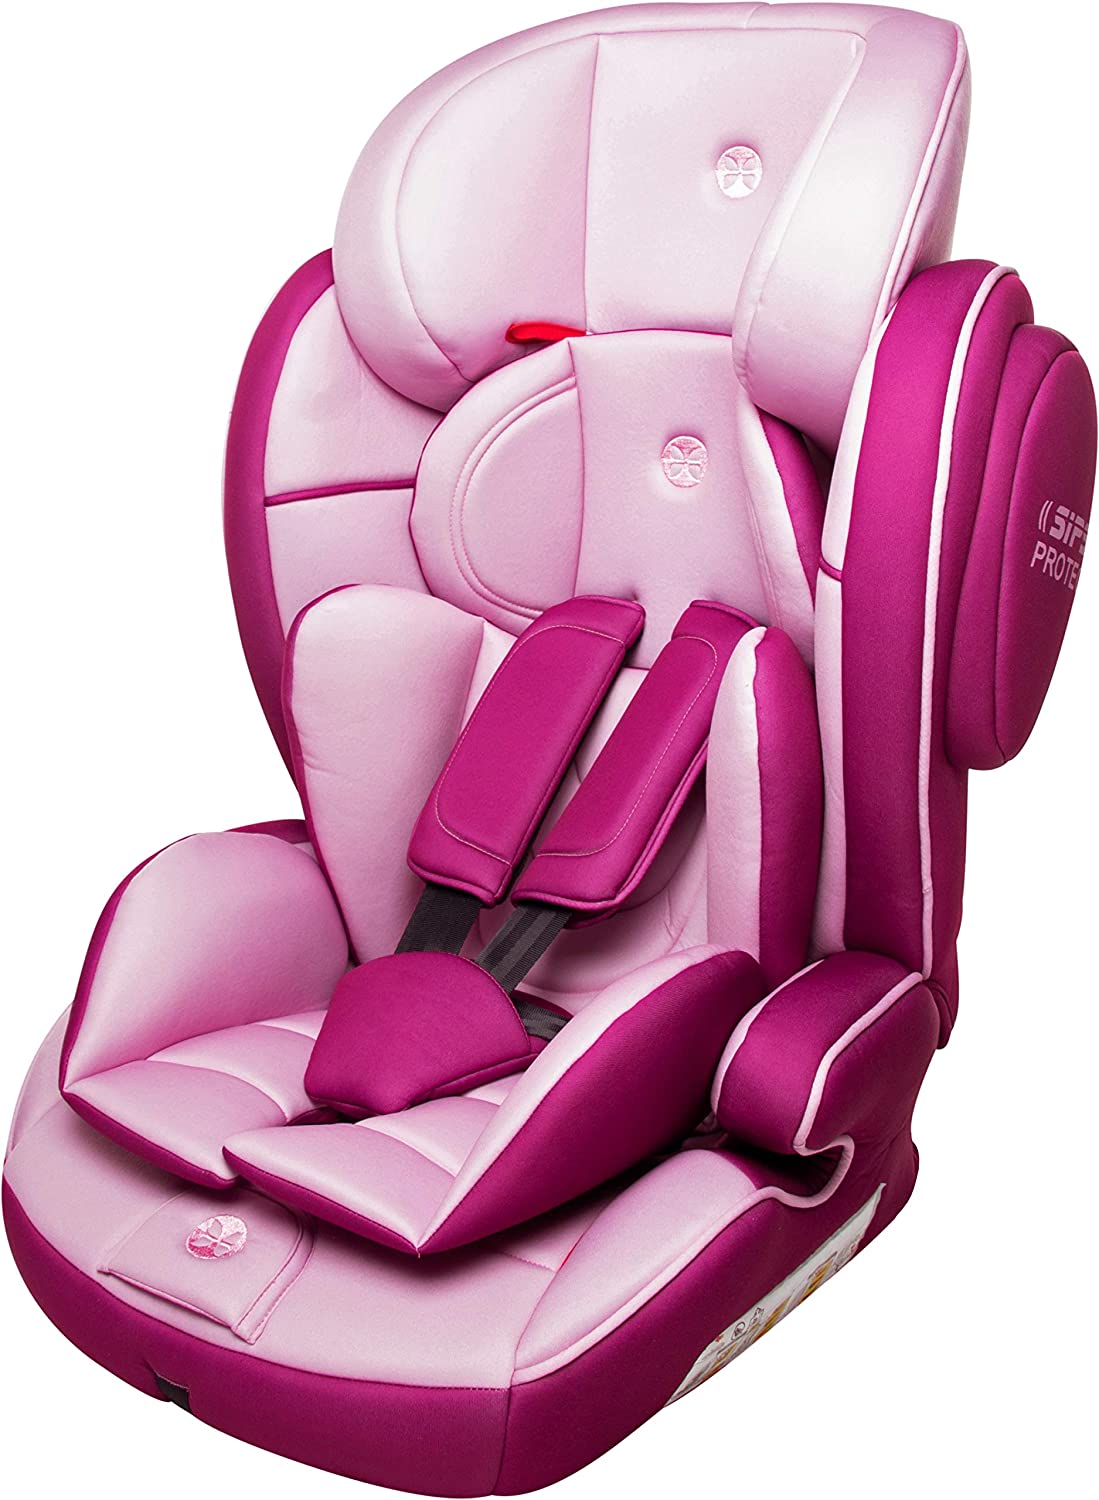 Babyblume Lotus Child Seat Group 1 2 3